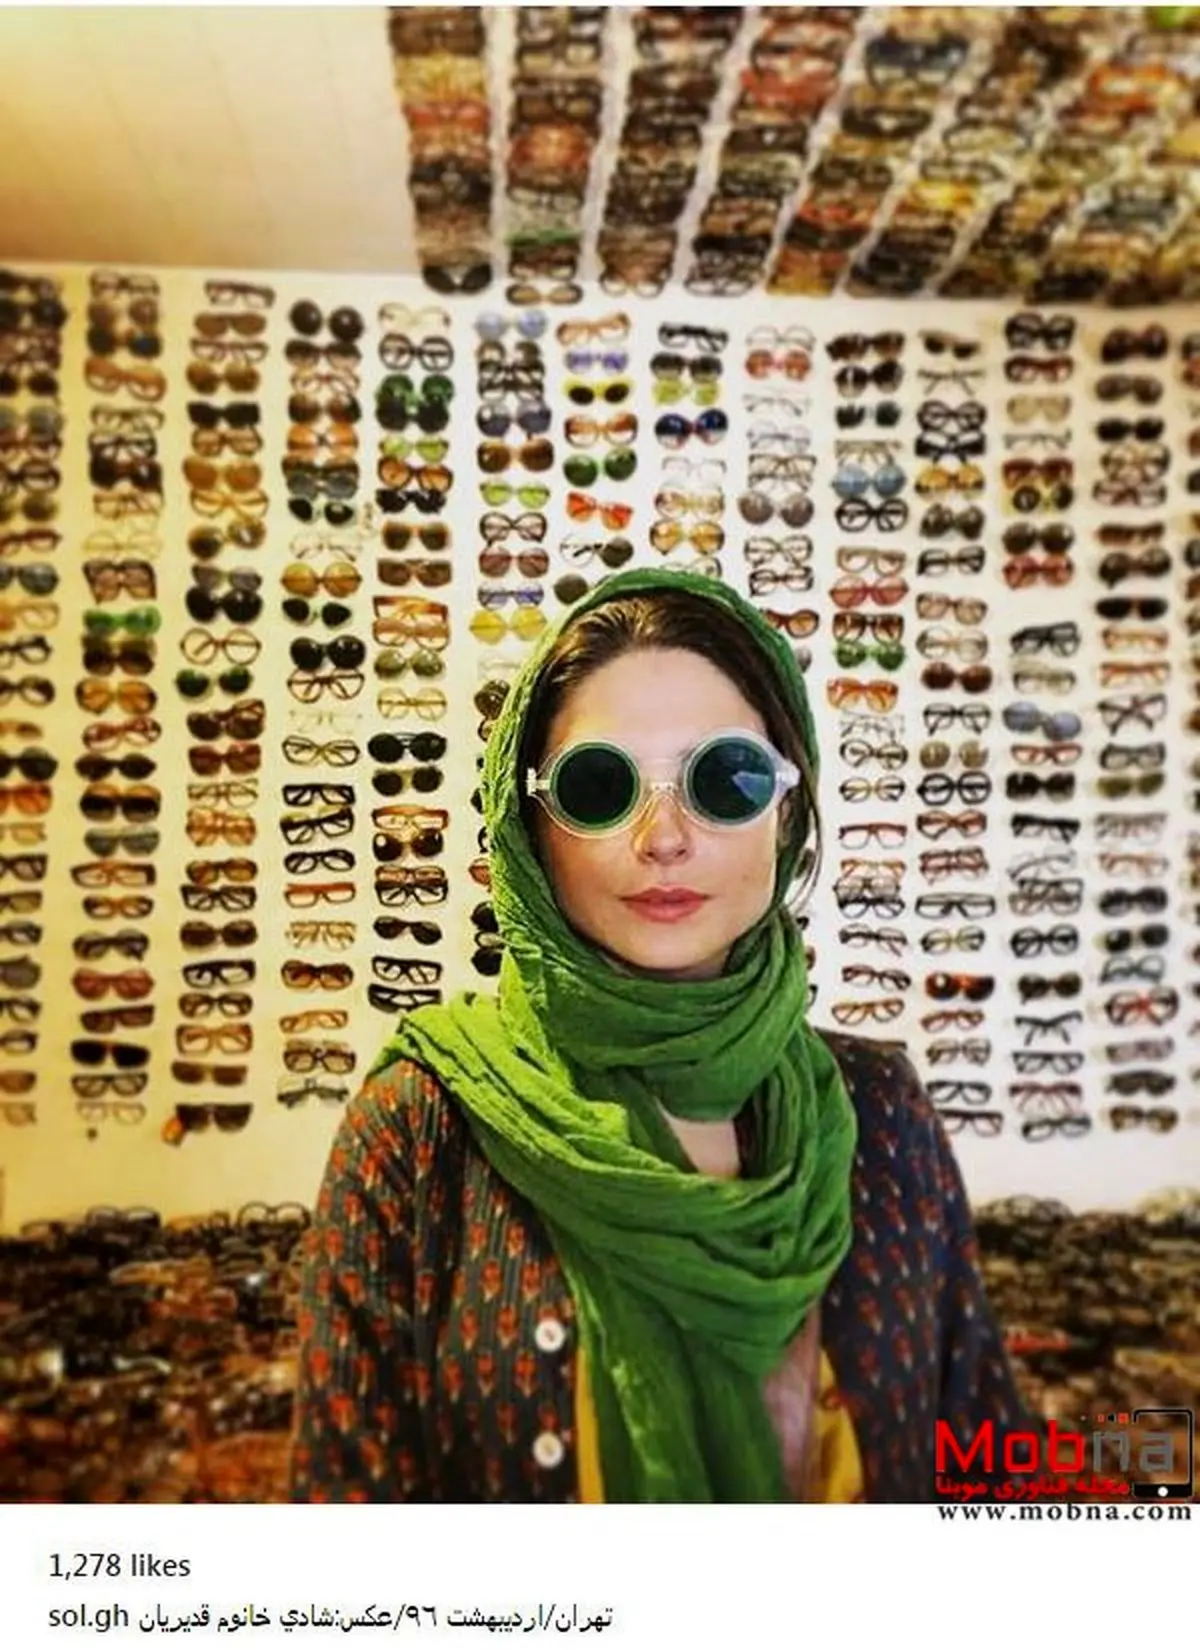 تیپ جالب سولماز غنی در یک عینک فروشی! (عکس)